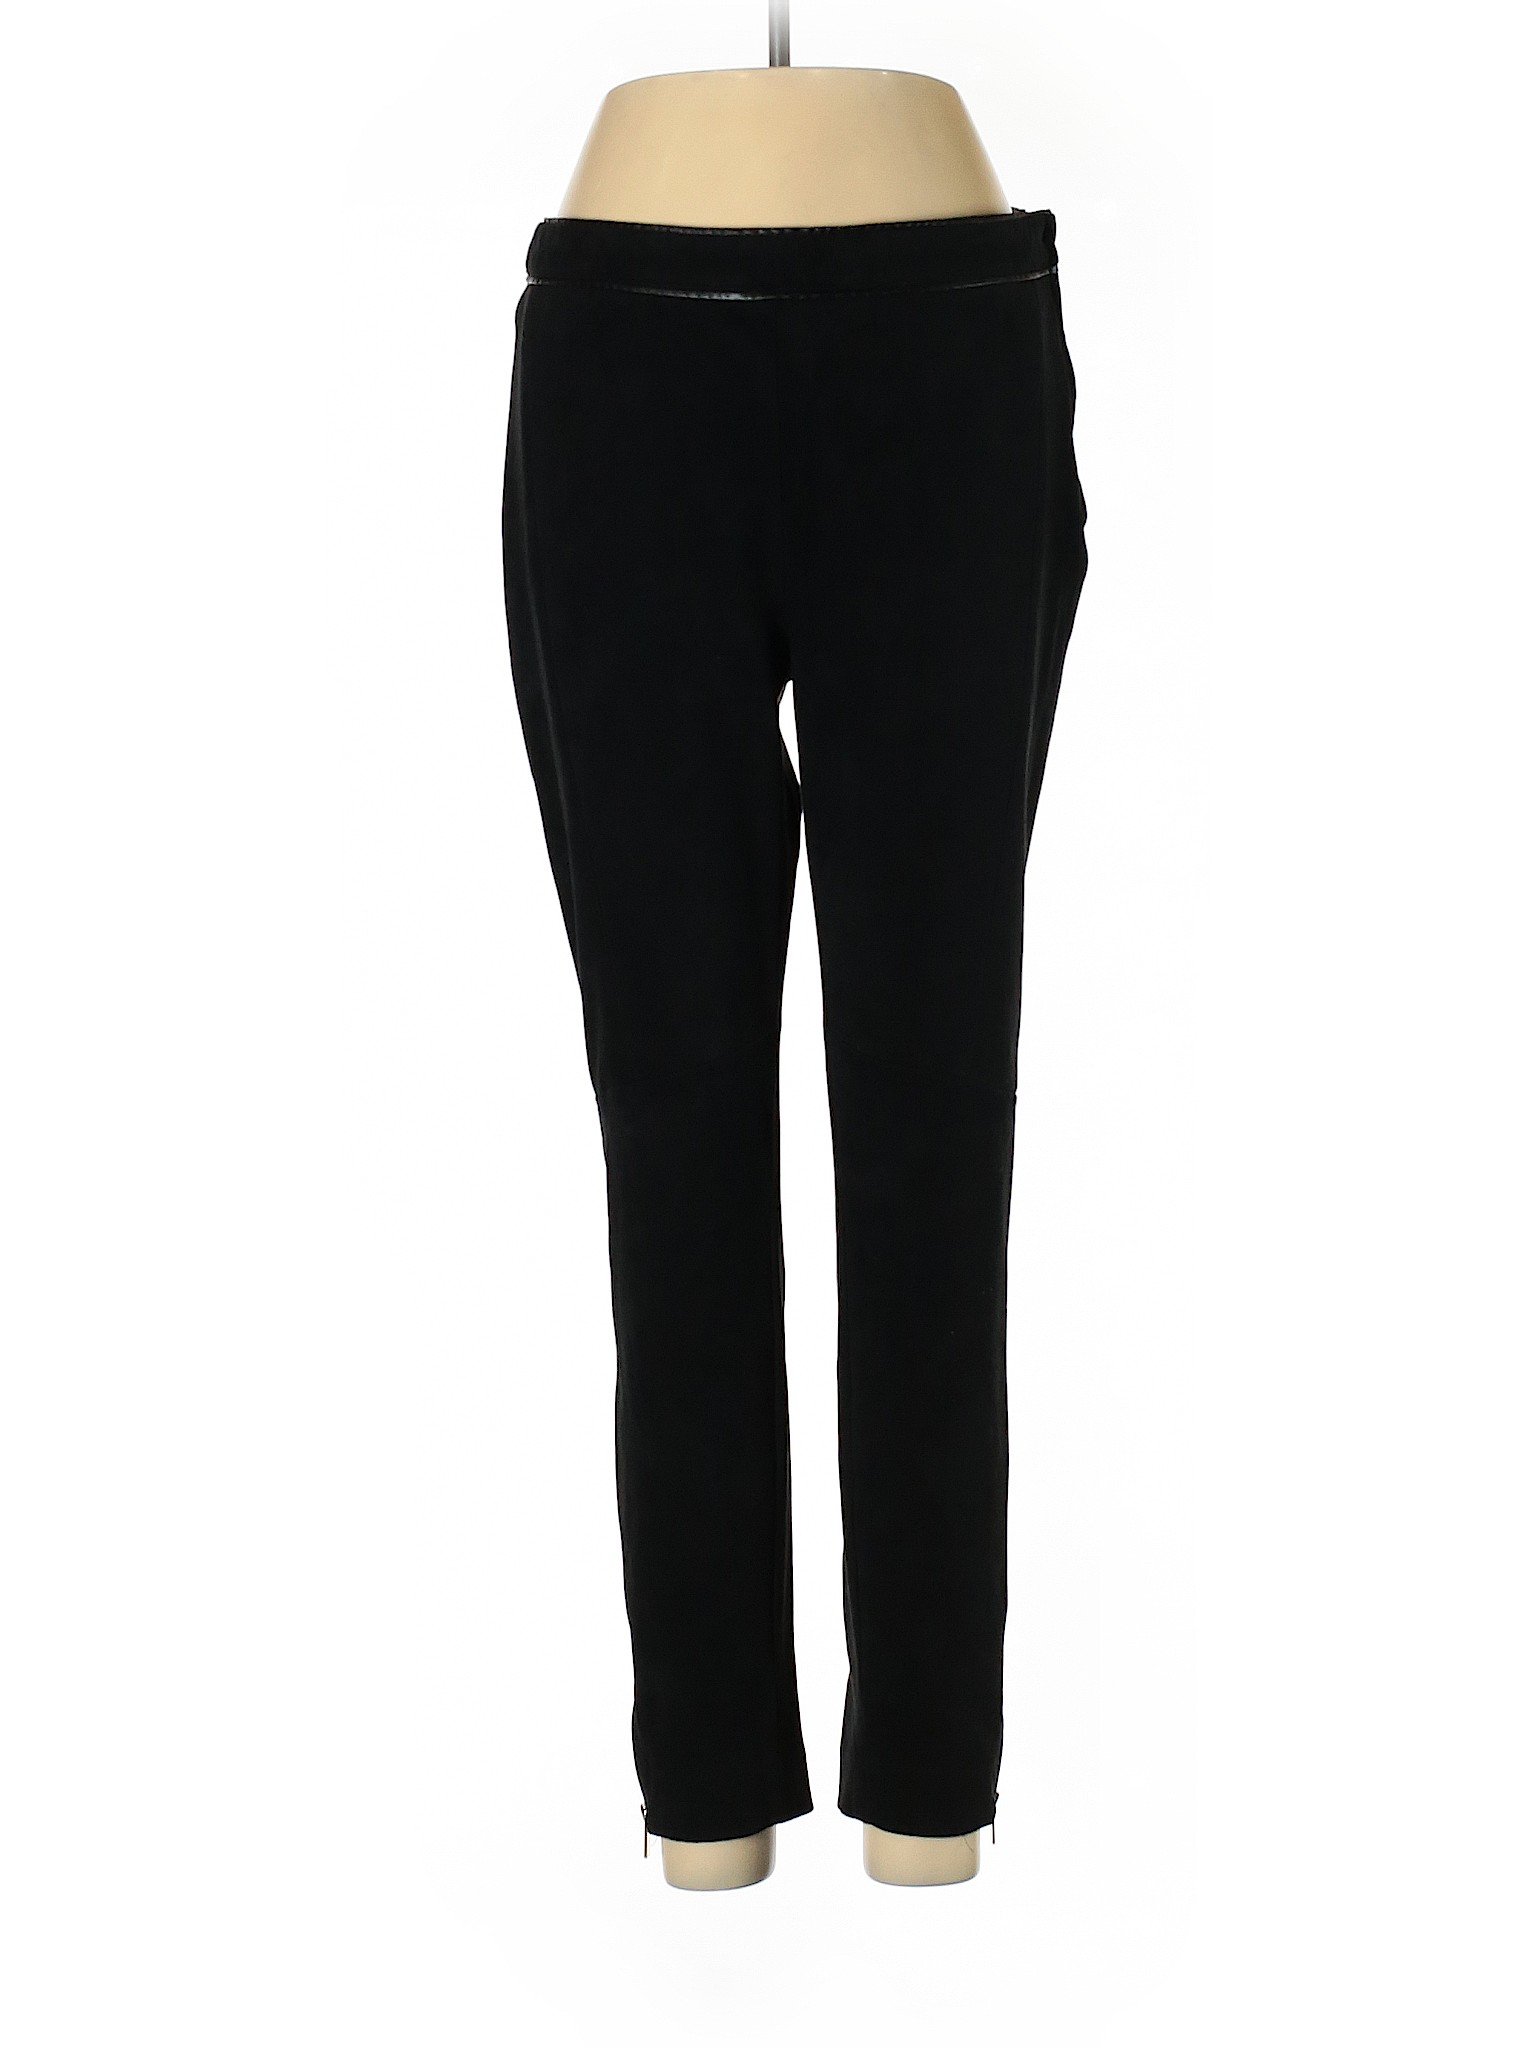 H&M Women Black Dress Pants 10 | eBay